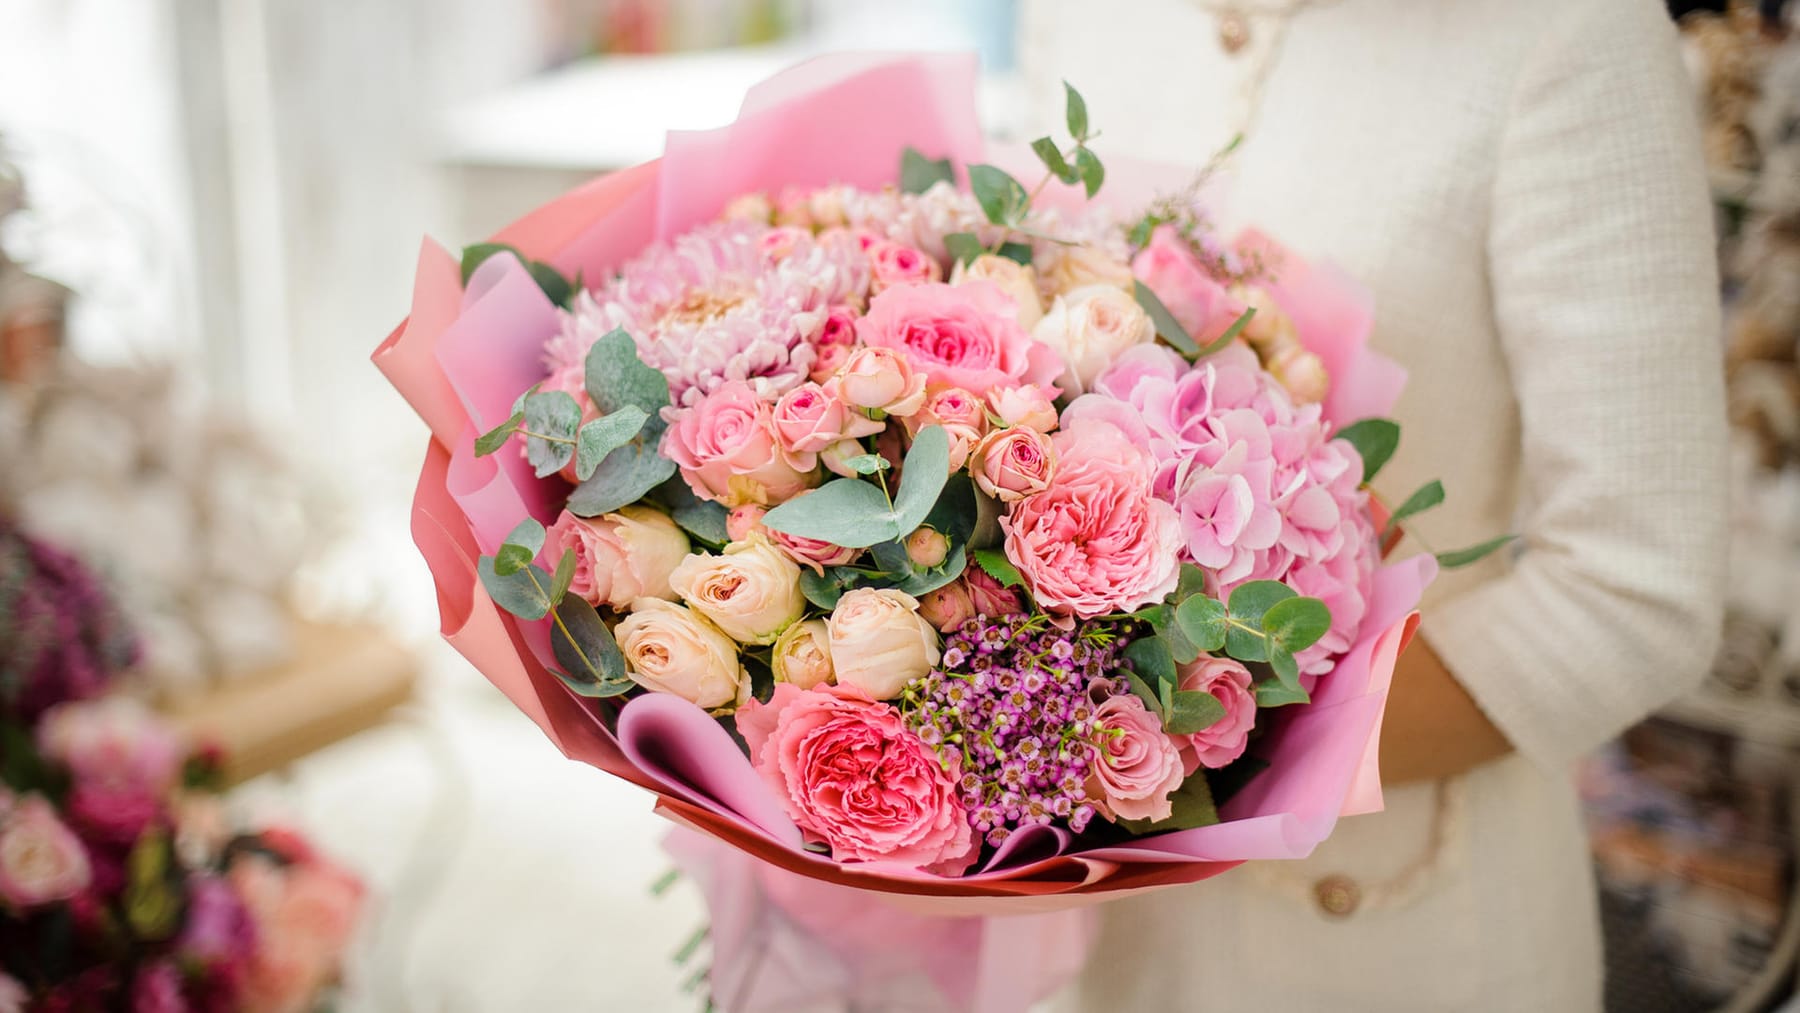 Valentinstag 2023: Das gibt es beim Blumenkauf zu beachten